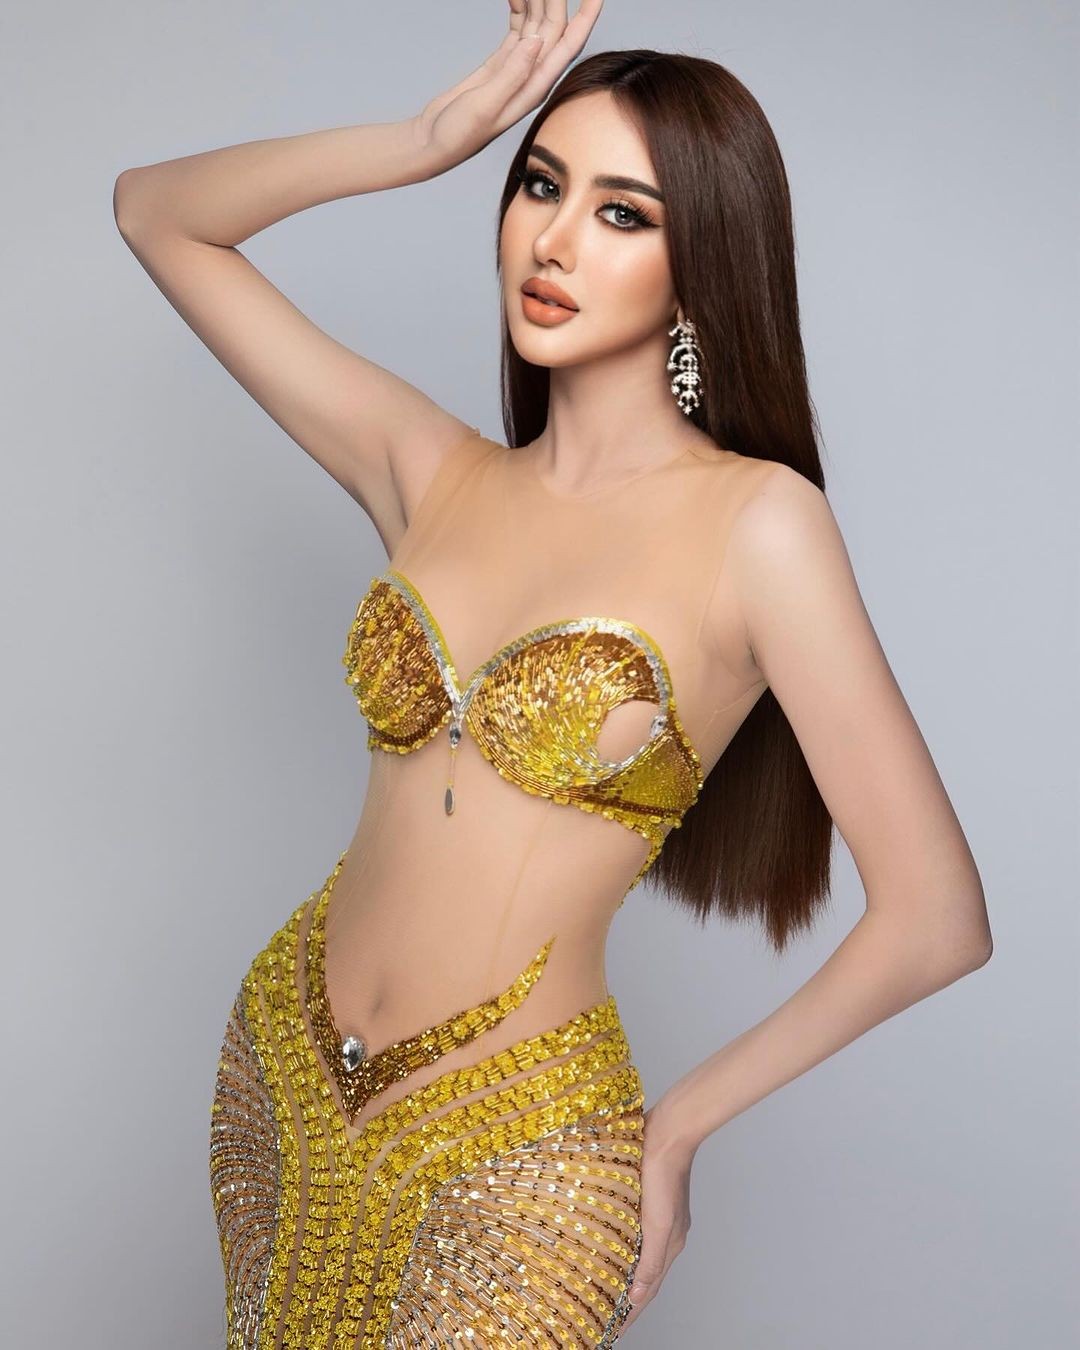 Người đẹp cao 1,76 m gây chú ý ở Hoa hậu Hòa bình Thái Lan ảnh 26